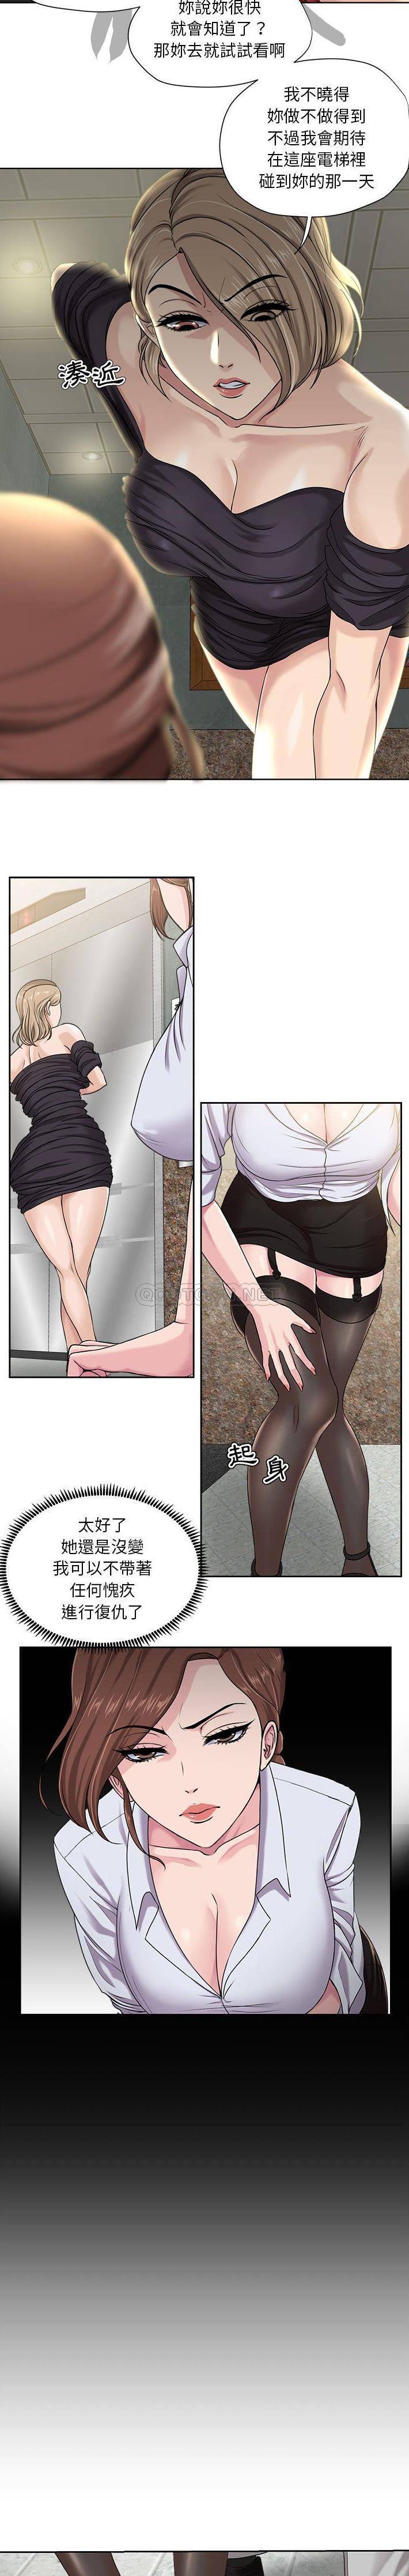 韩国污漫画 女人專門為難女人(女人的戰爭) 第8话 8